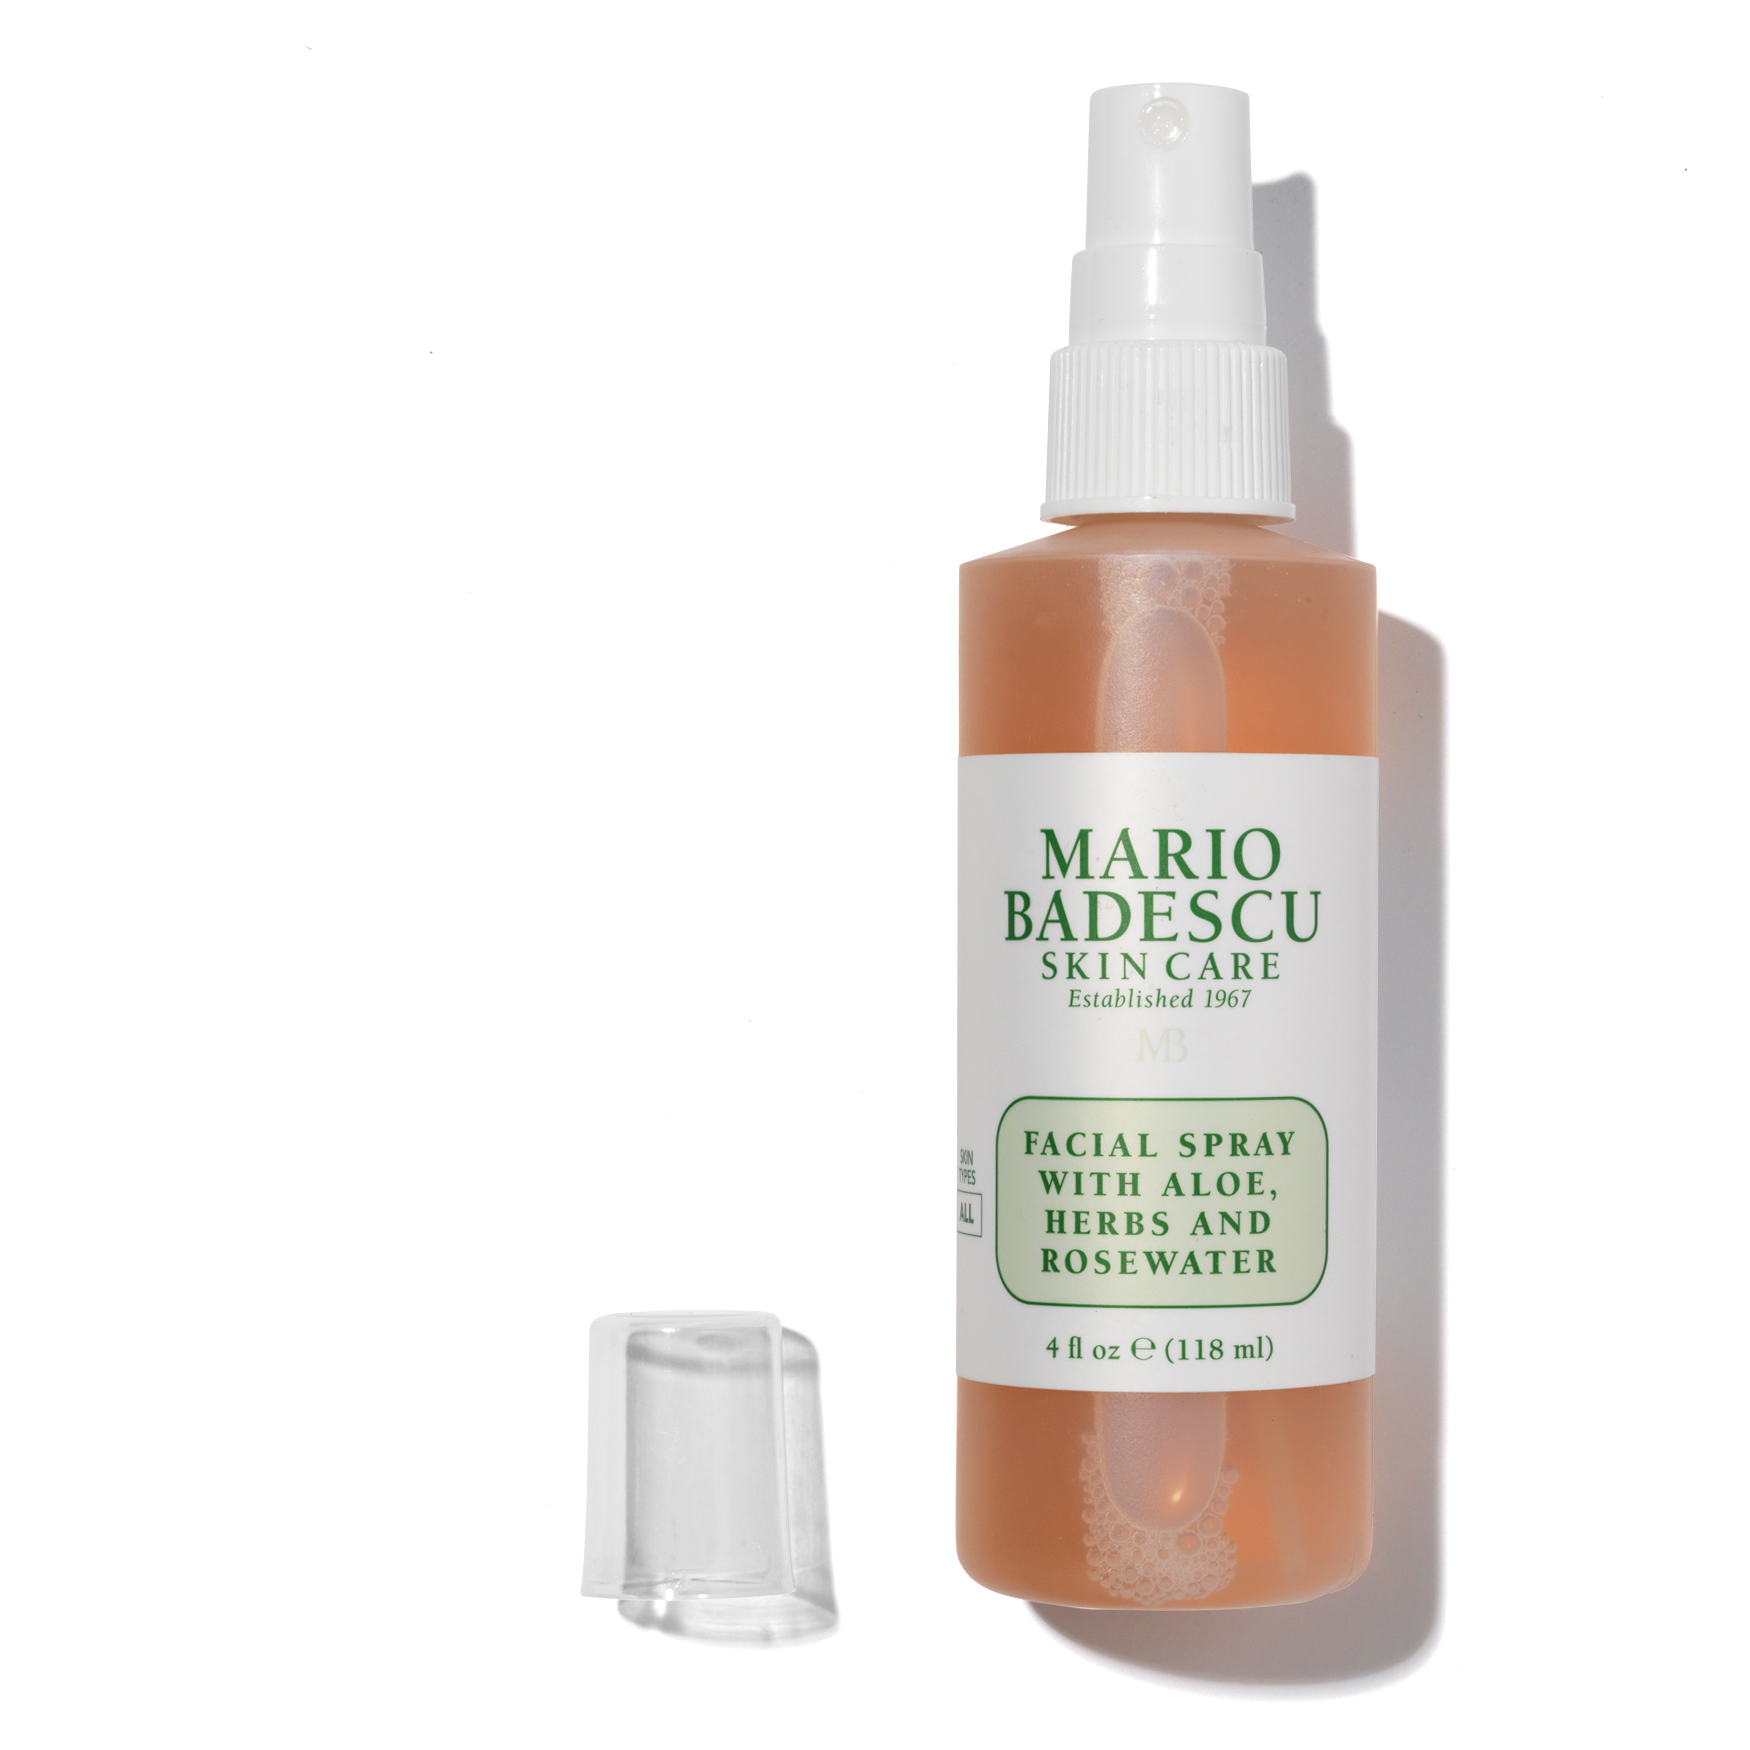 MARIO BADESCU FACIAL Spray Aloe Herbs Rosewater Travel size 1.0 oz